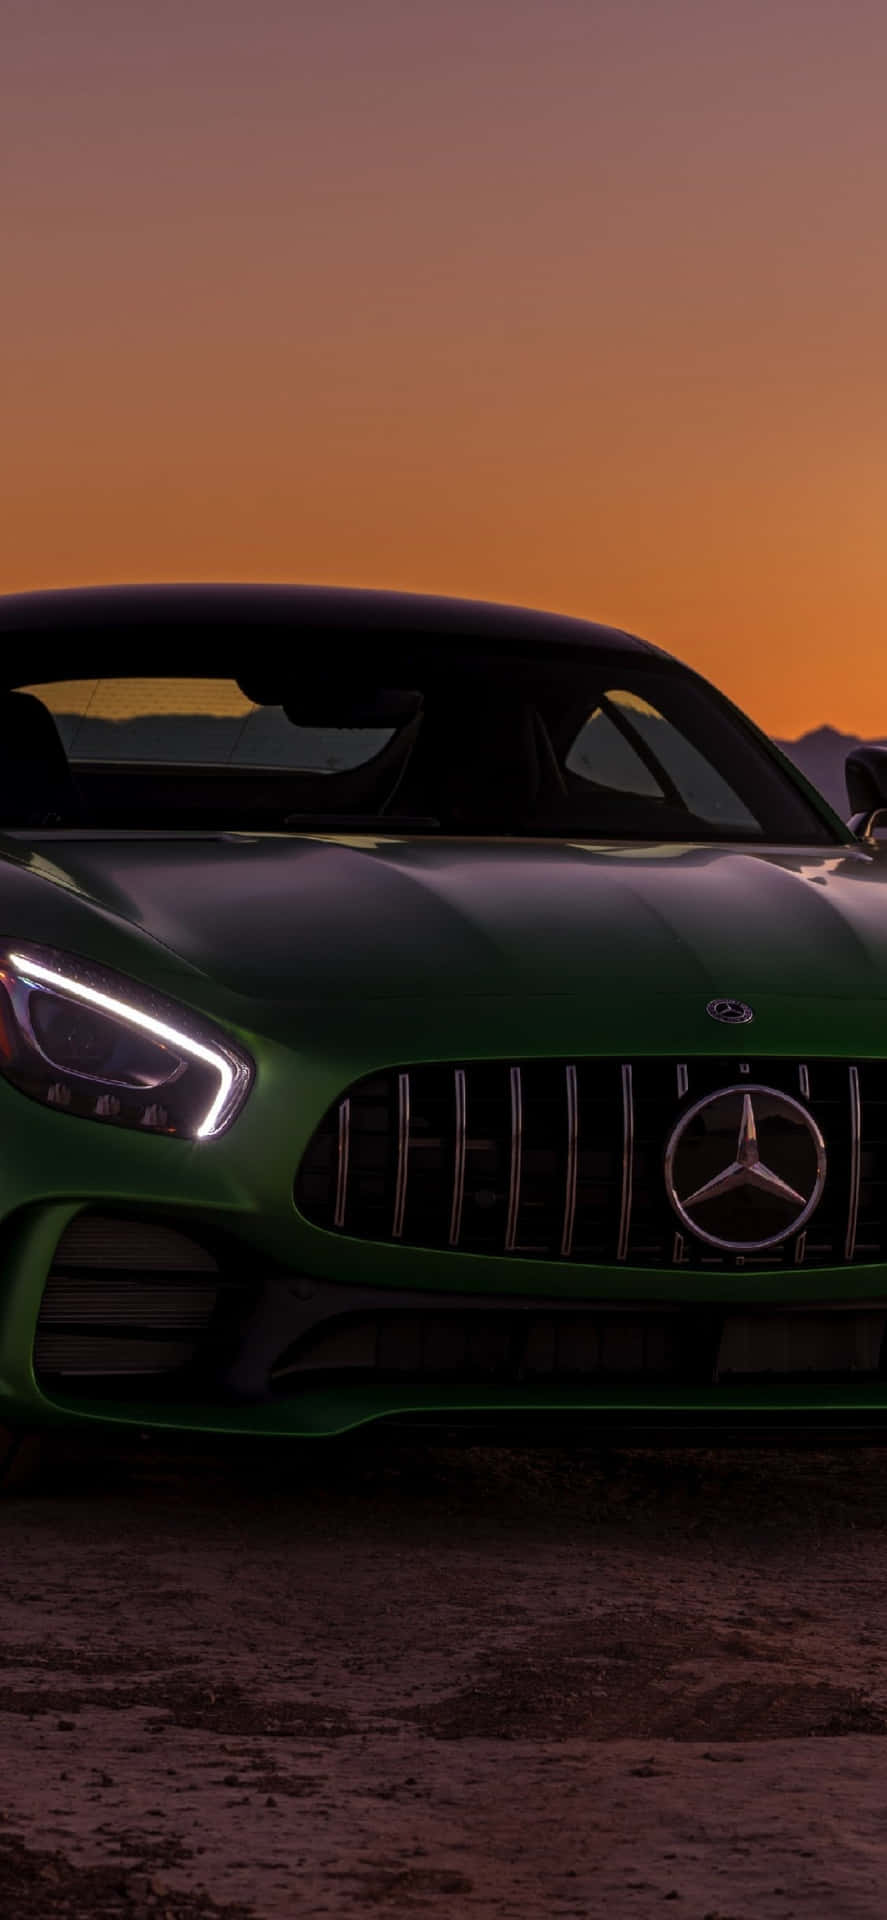 Green Mercedes Gts Sunset Wallpaper